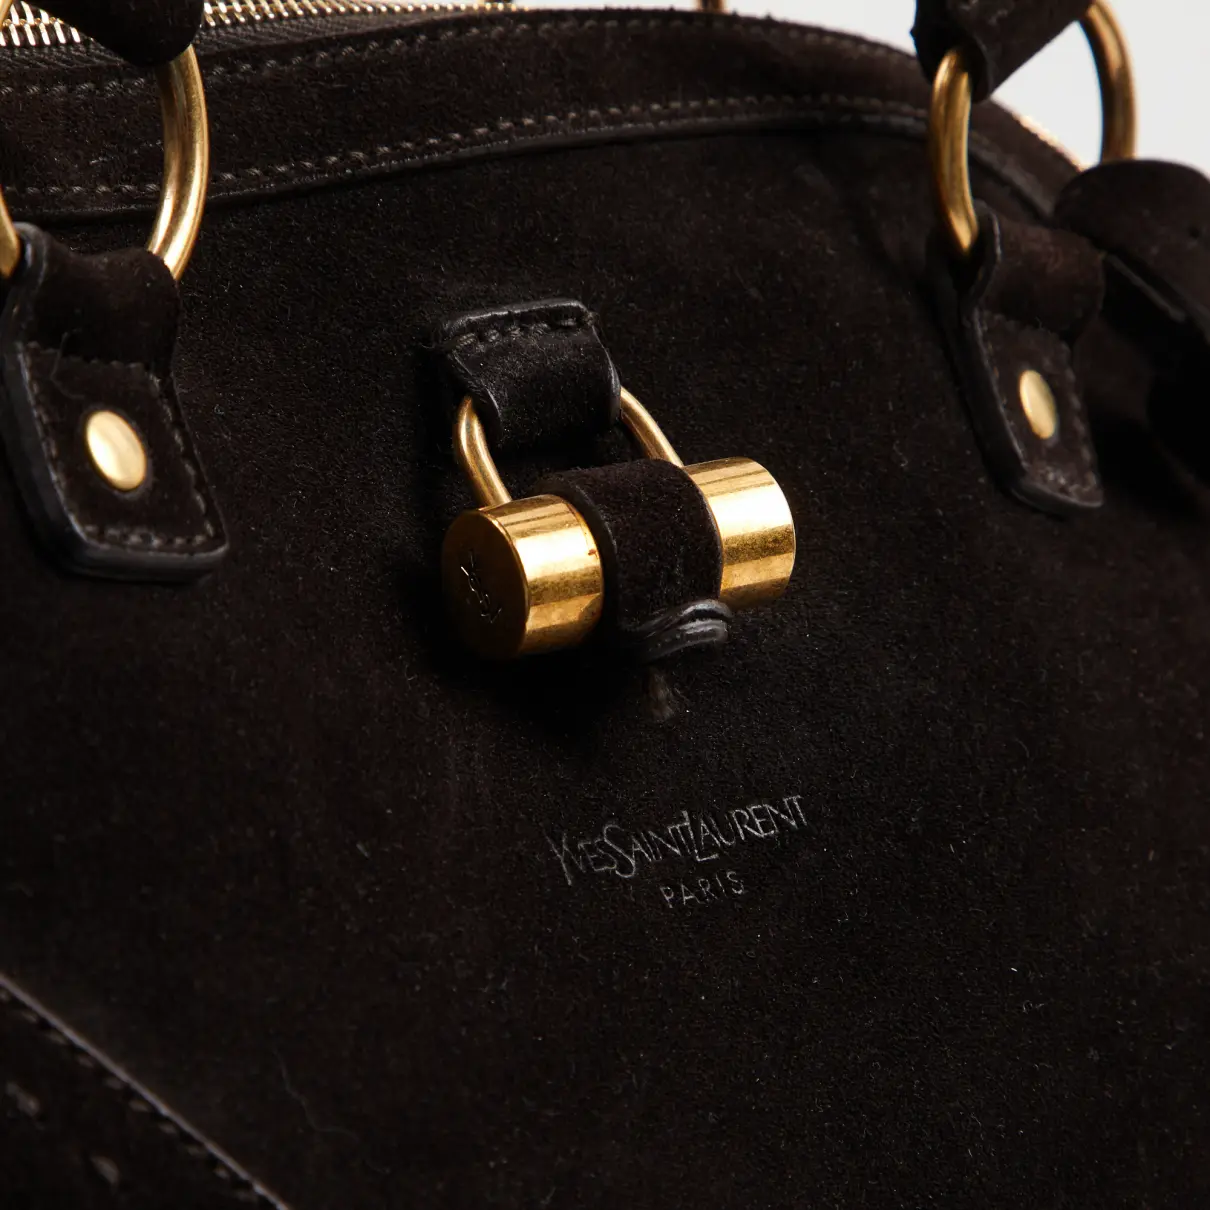 Easy handbag Yves Saint Laurent